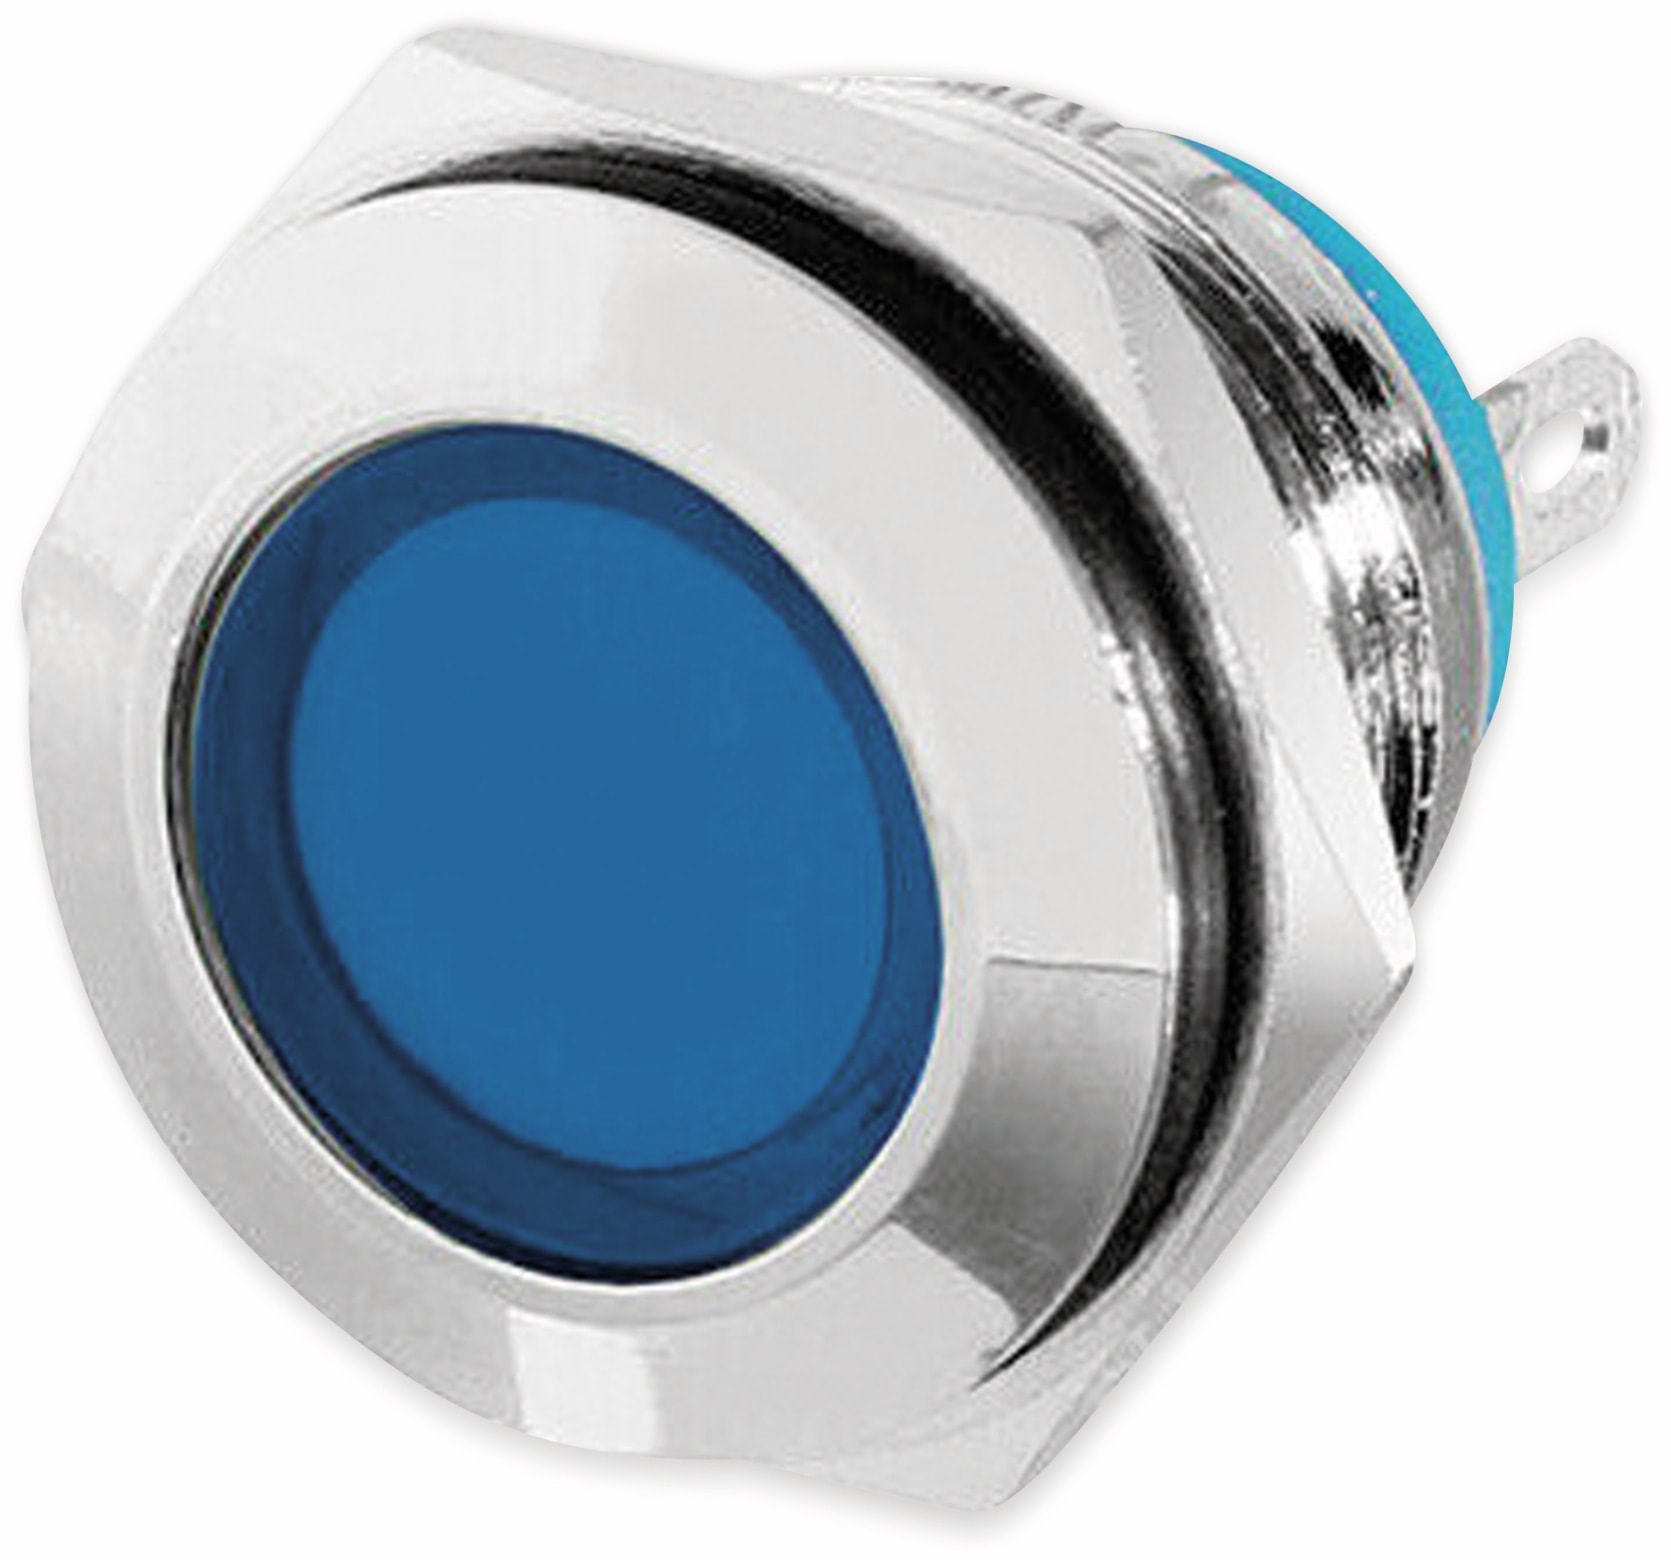 LED-Kontrollleuchte, Signalleuchte 12 V, Blau, Ø16 mm, Messing, Tiefe 22 mm